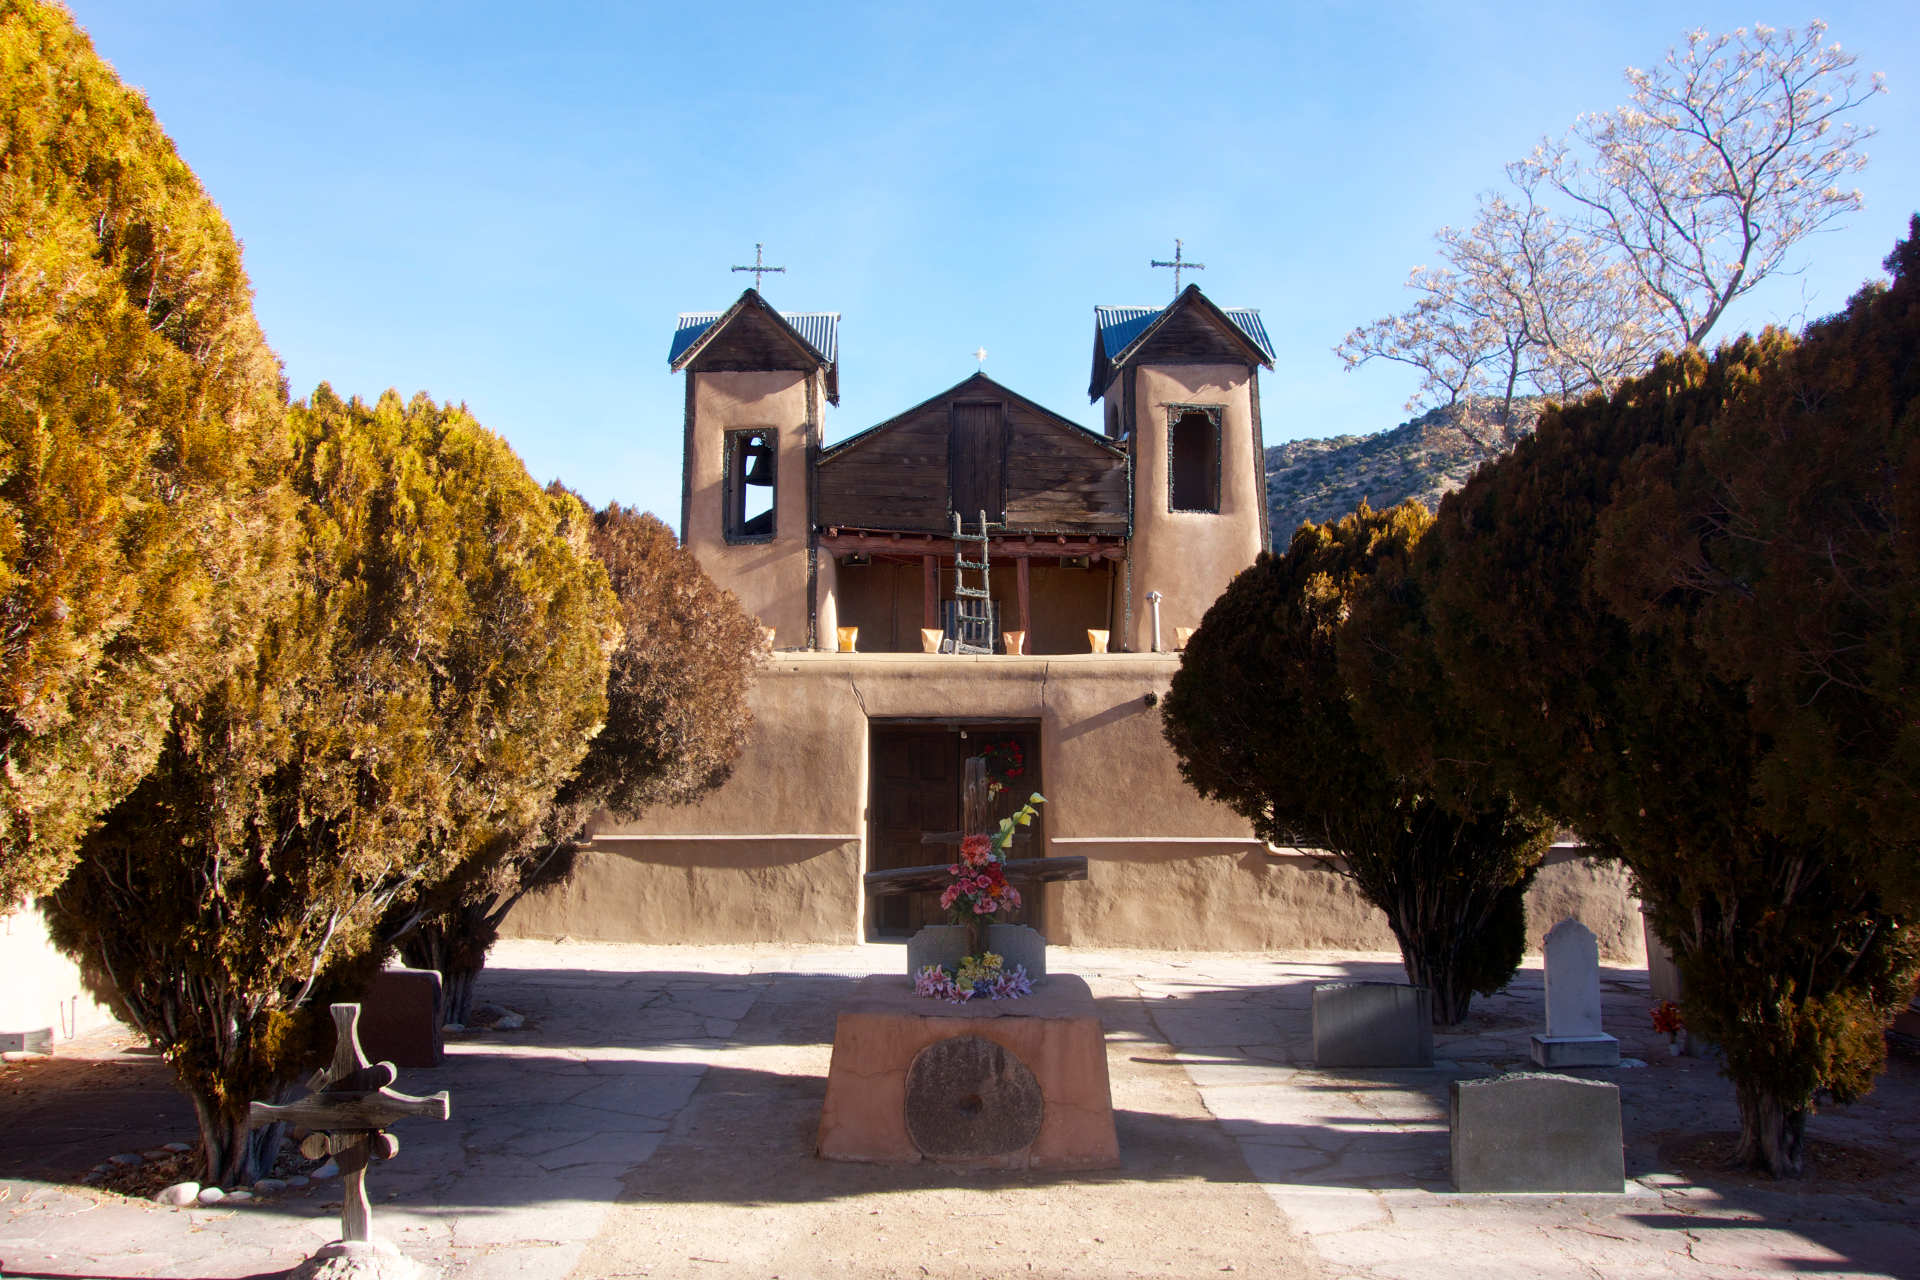 El Santuario de Chimayo on the high road to Taos